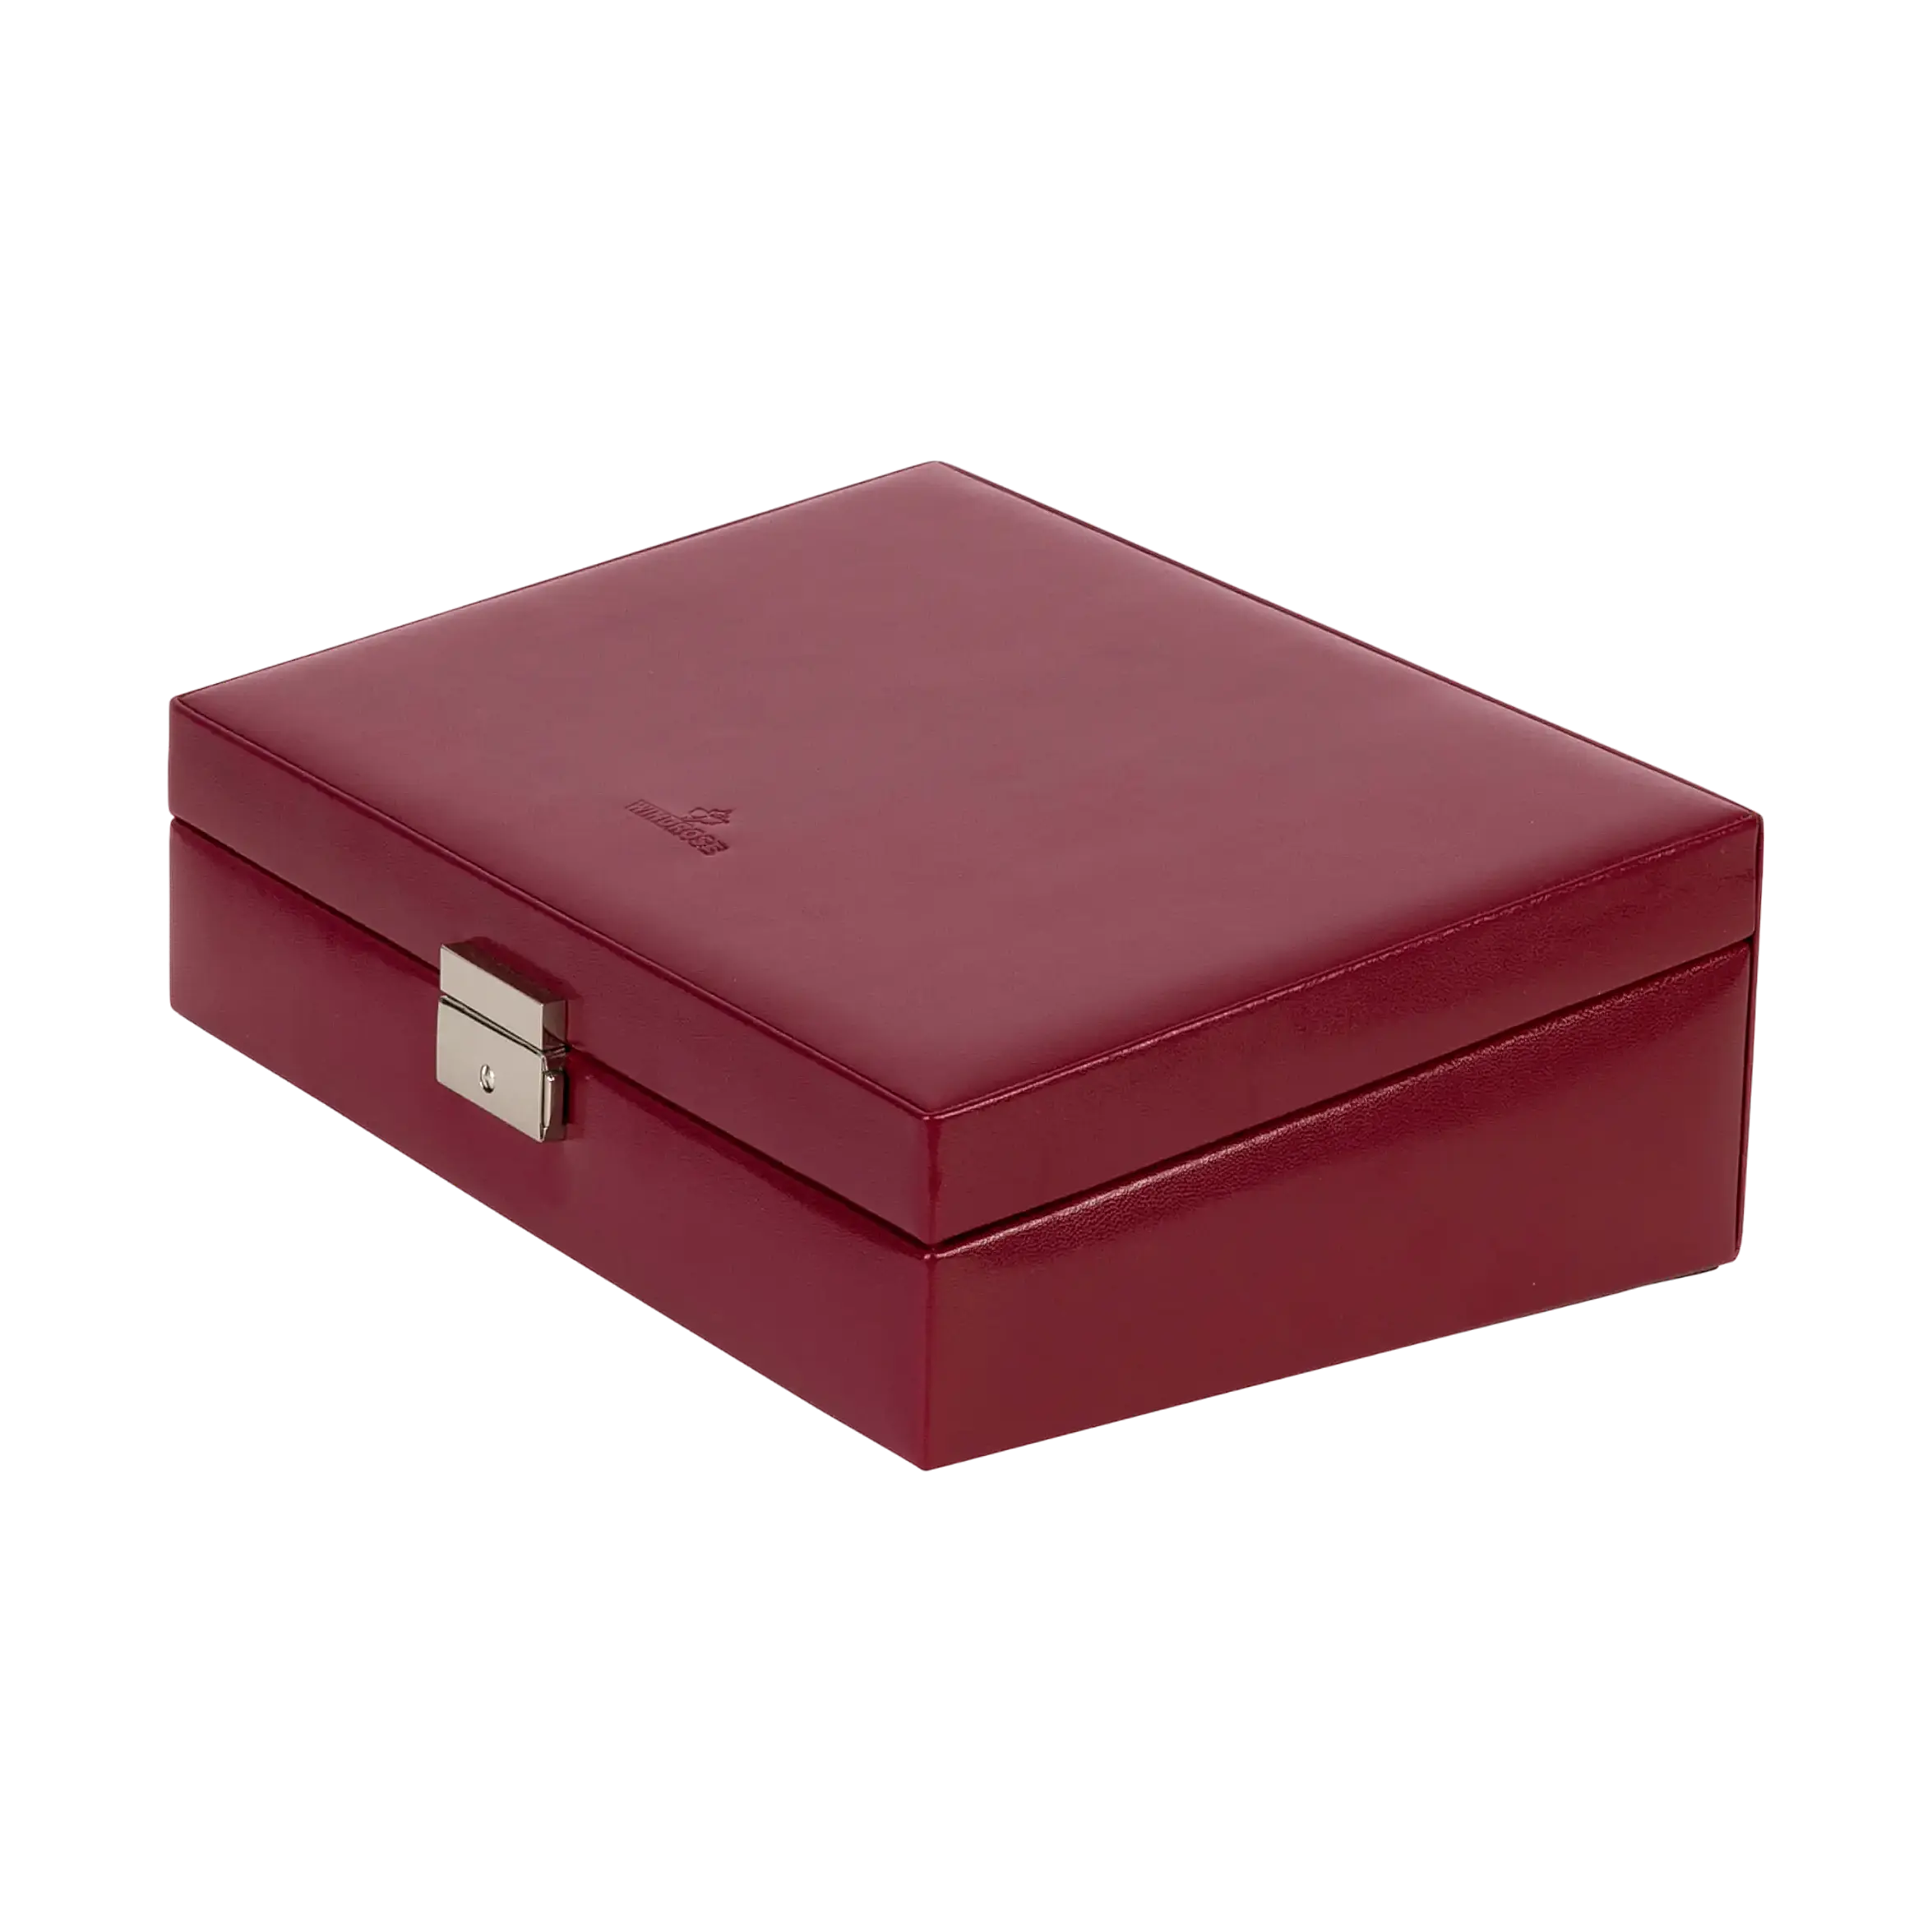 Merino jewellery box / red